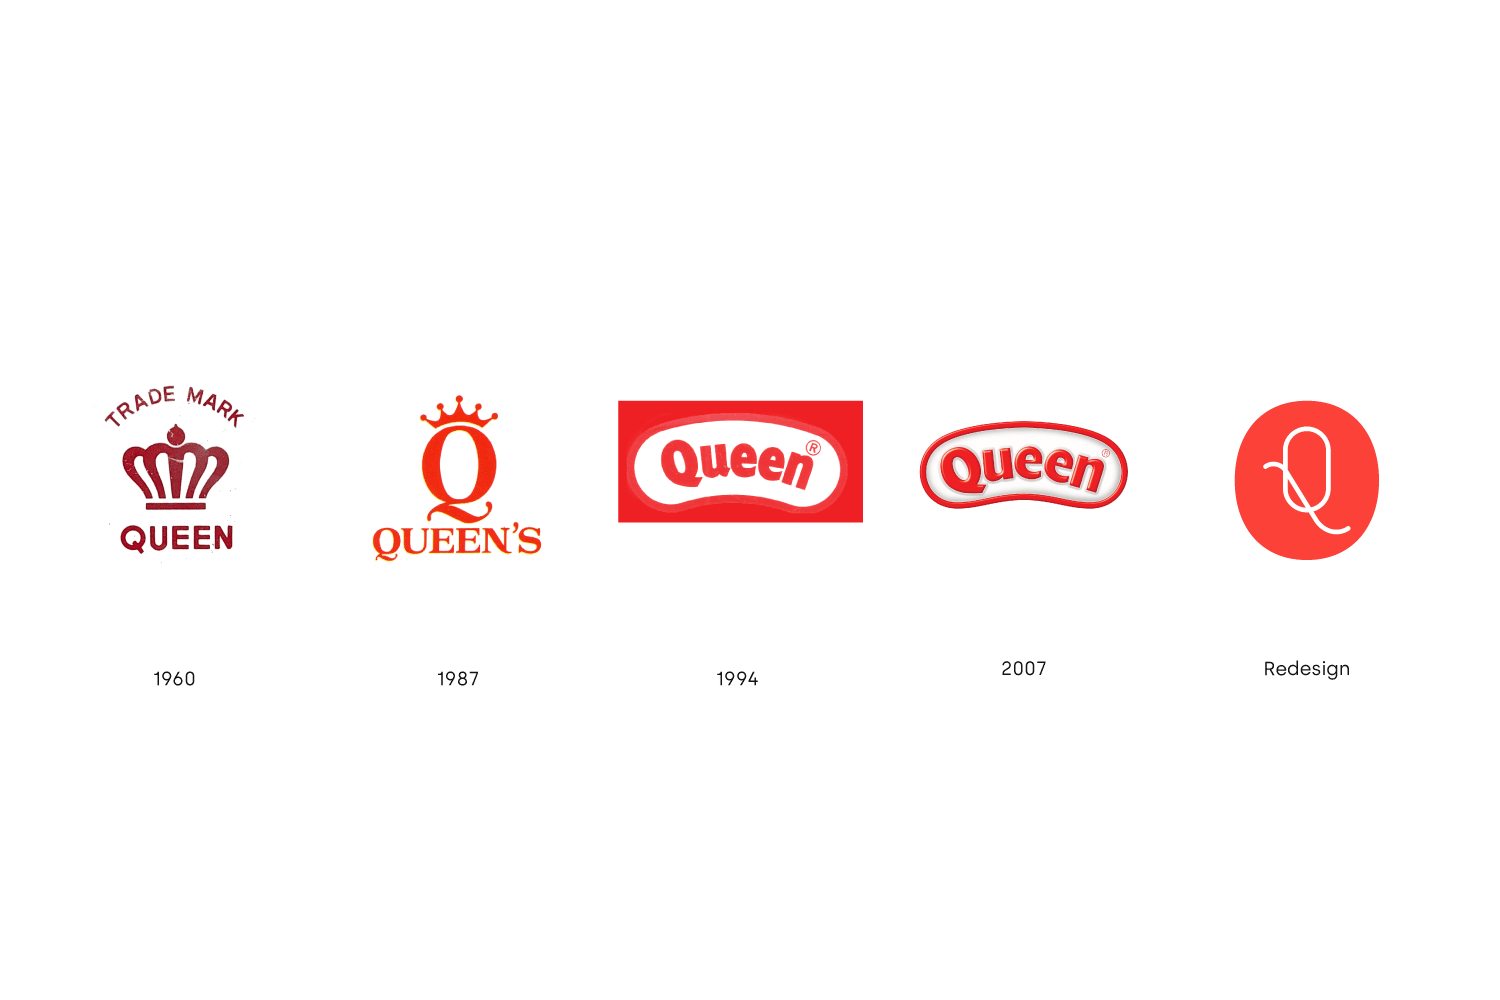  History of Queen’s logos 